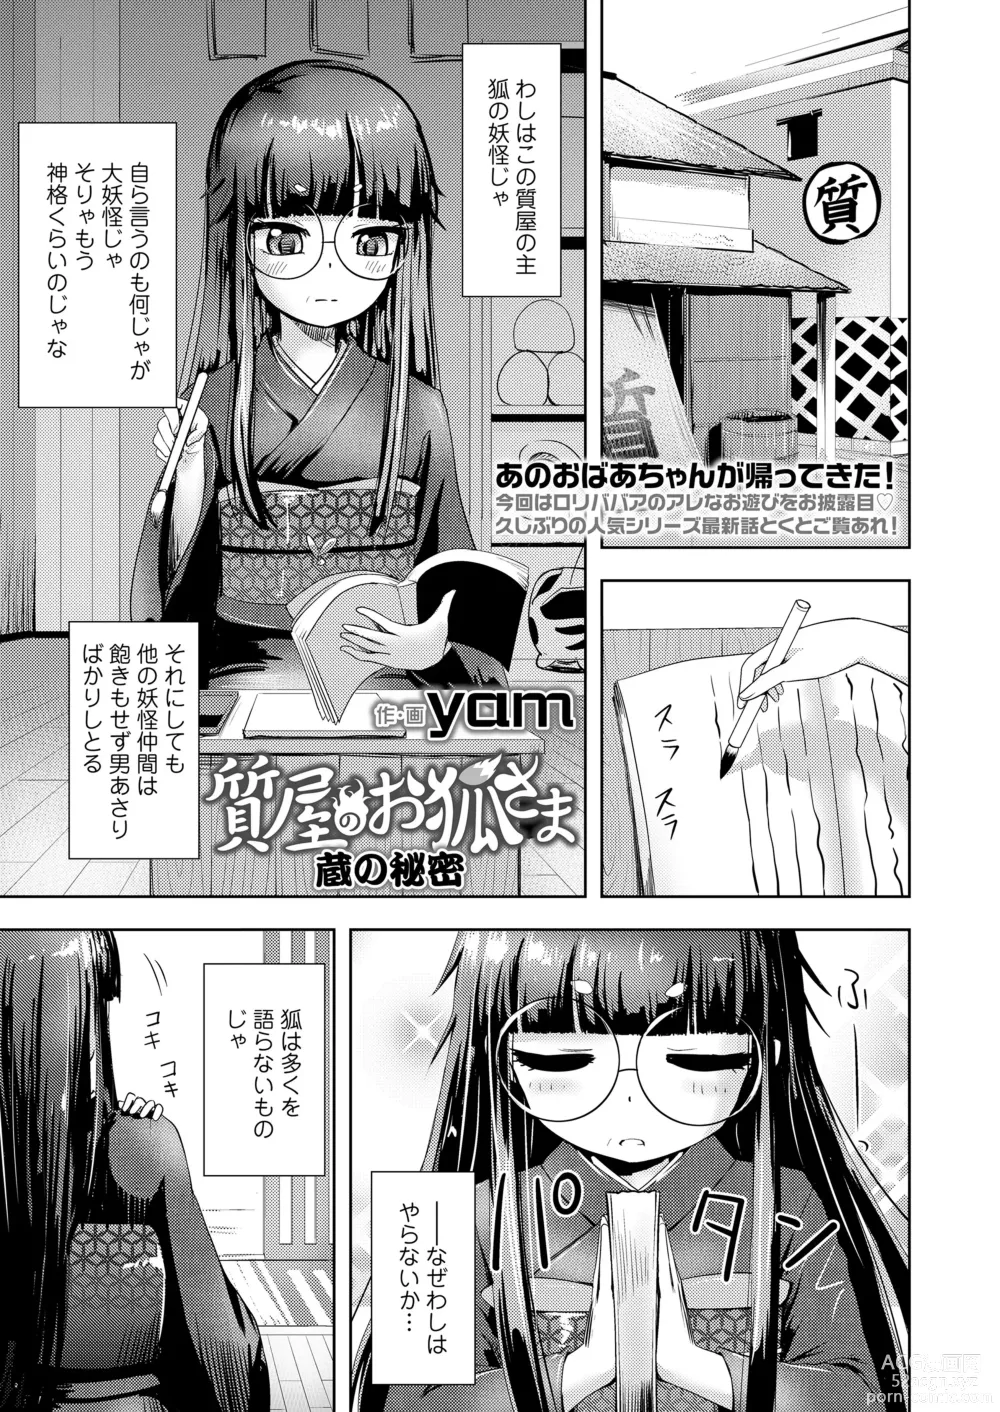 Page 173 of manga Towako Oboro Emaki 14